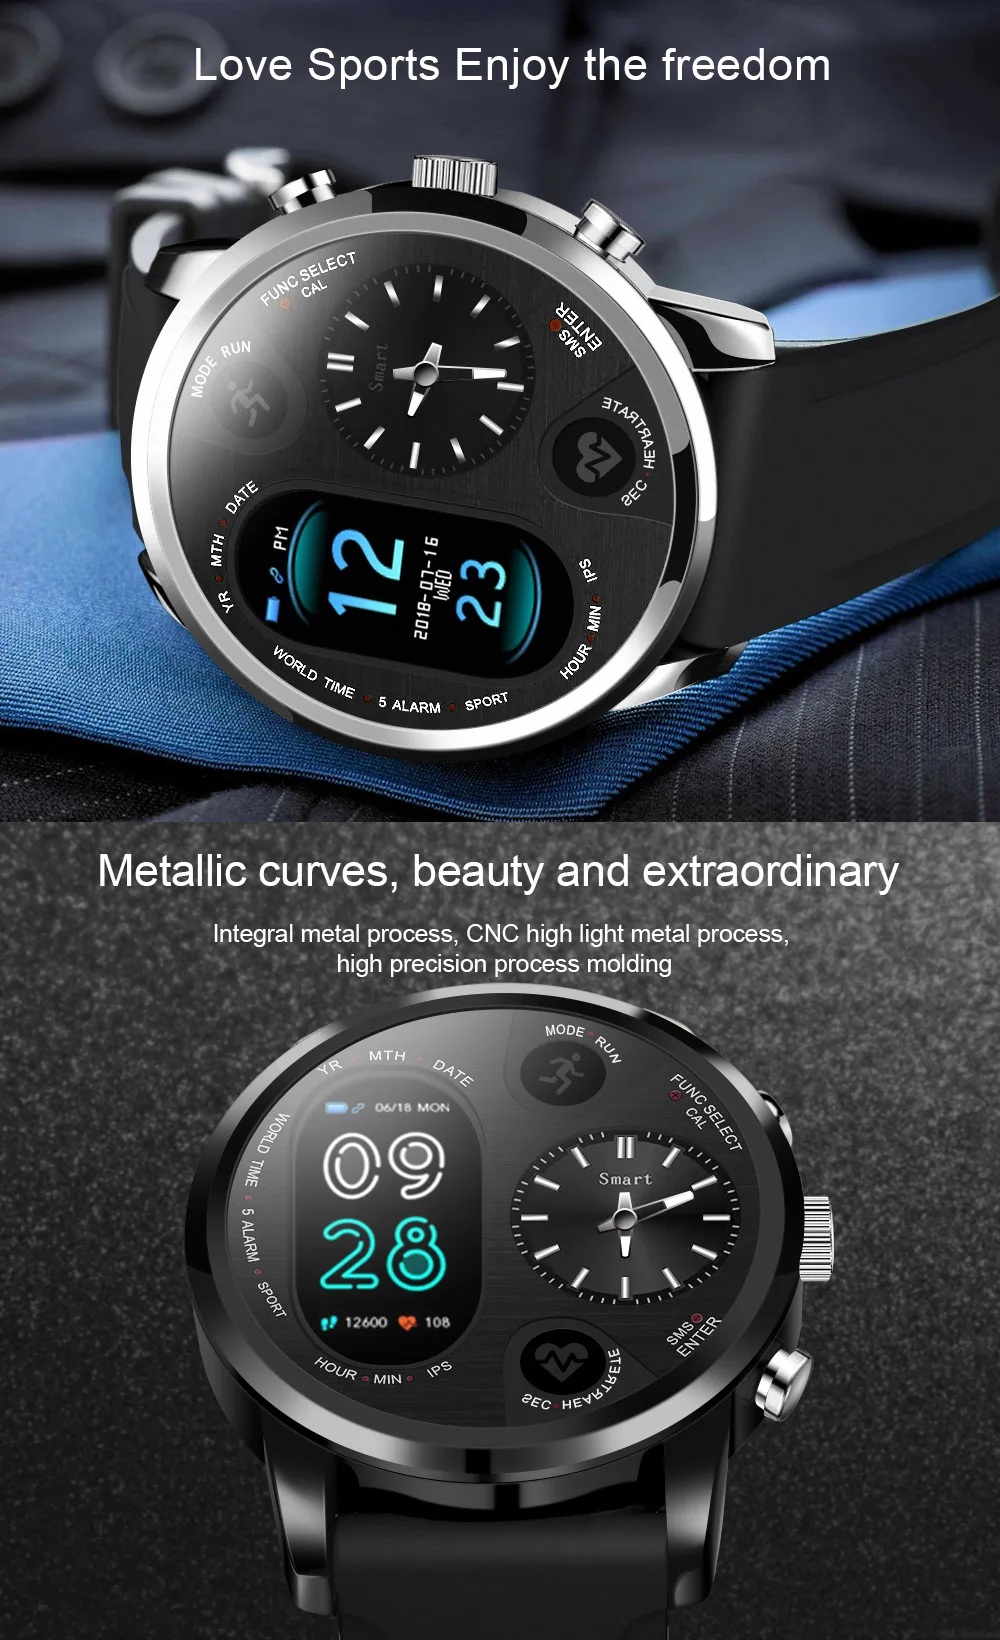 Топ Роскошные цифровые часы для мужчин спортивные часы электронный светодиодный мужские наручные часы для мужчин часы новые наручные часы Часы сердечного ритма Hodinky